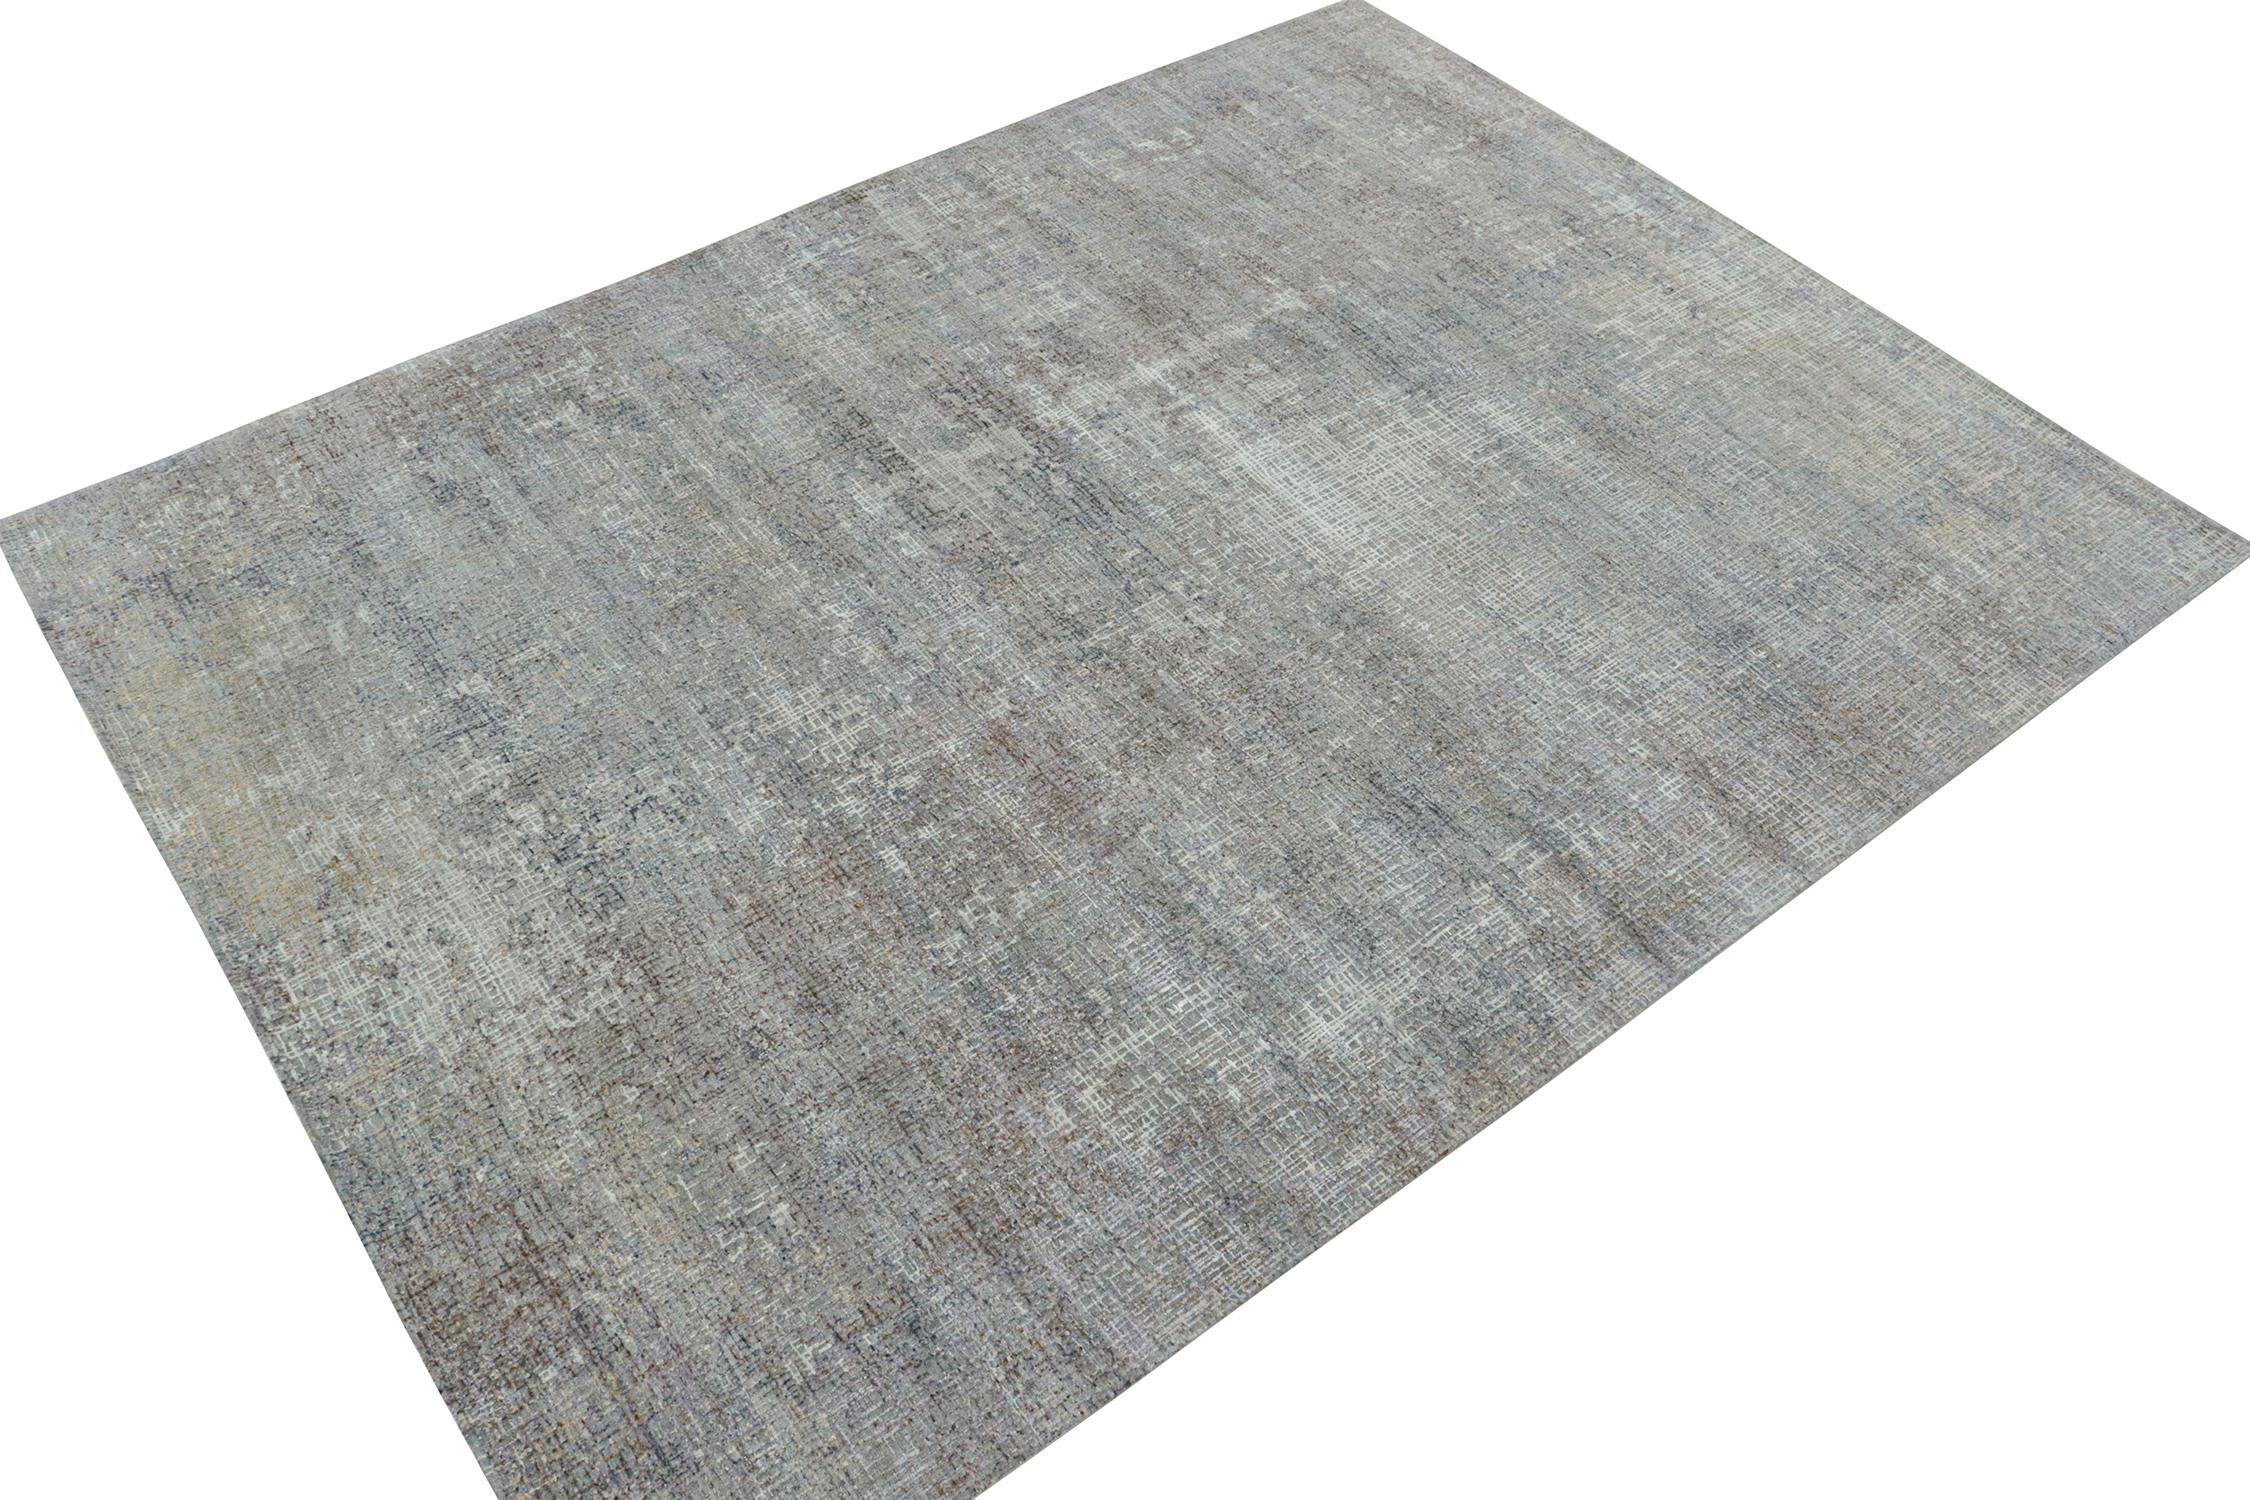 Ce tapis abstrait de 9x12 est un nouvel ajout à la gamme de tapis modernes et audacieux de Rug & Kilim. Noué à la main en laine et en soie.
Plus loin dans la conception : 
Ce motif présente des stries géométriques en gris et des nuances colorées,